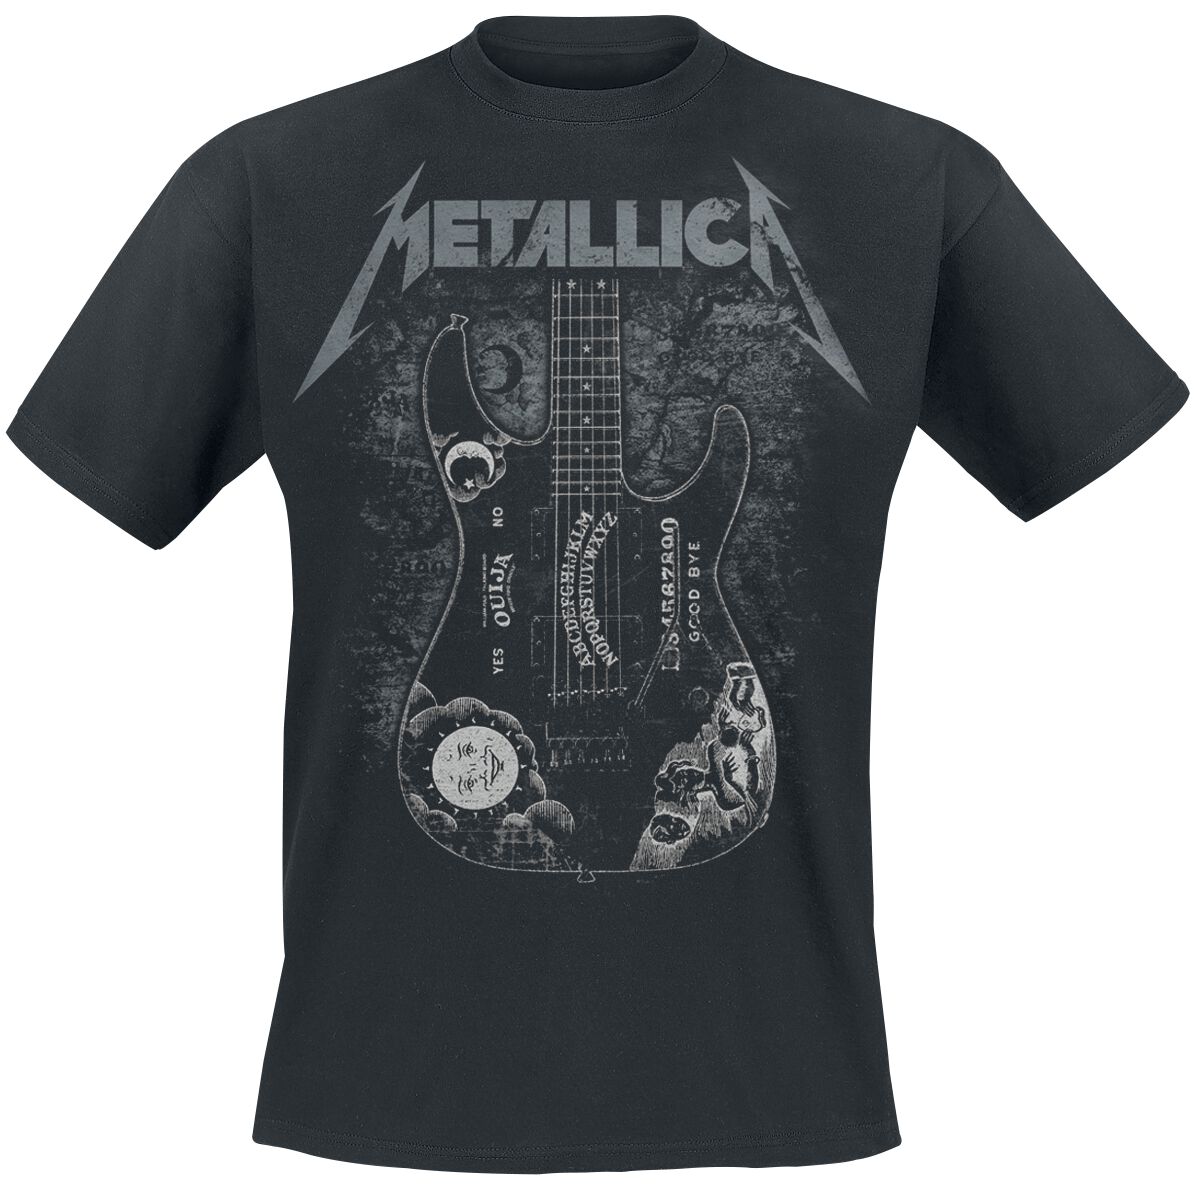 Metallica T-Shirt - Hammett Ouija Guitar - S bis 3XL - für Männer - Größe XXL - schwarz  - Lizenziertes Merchandise!